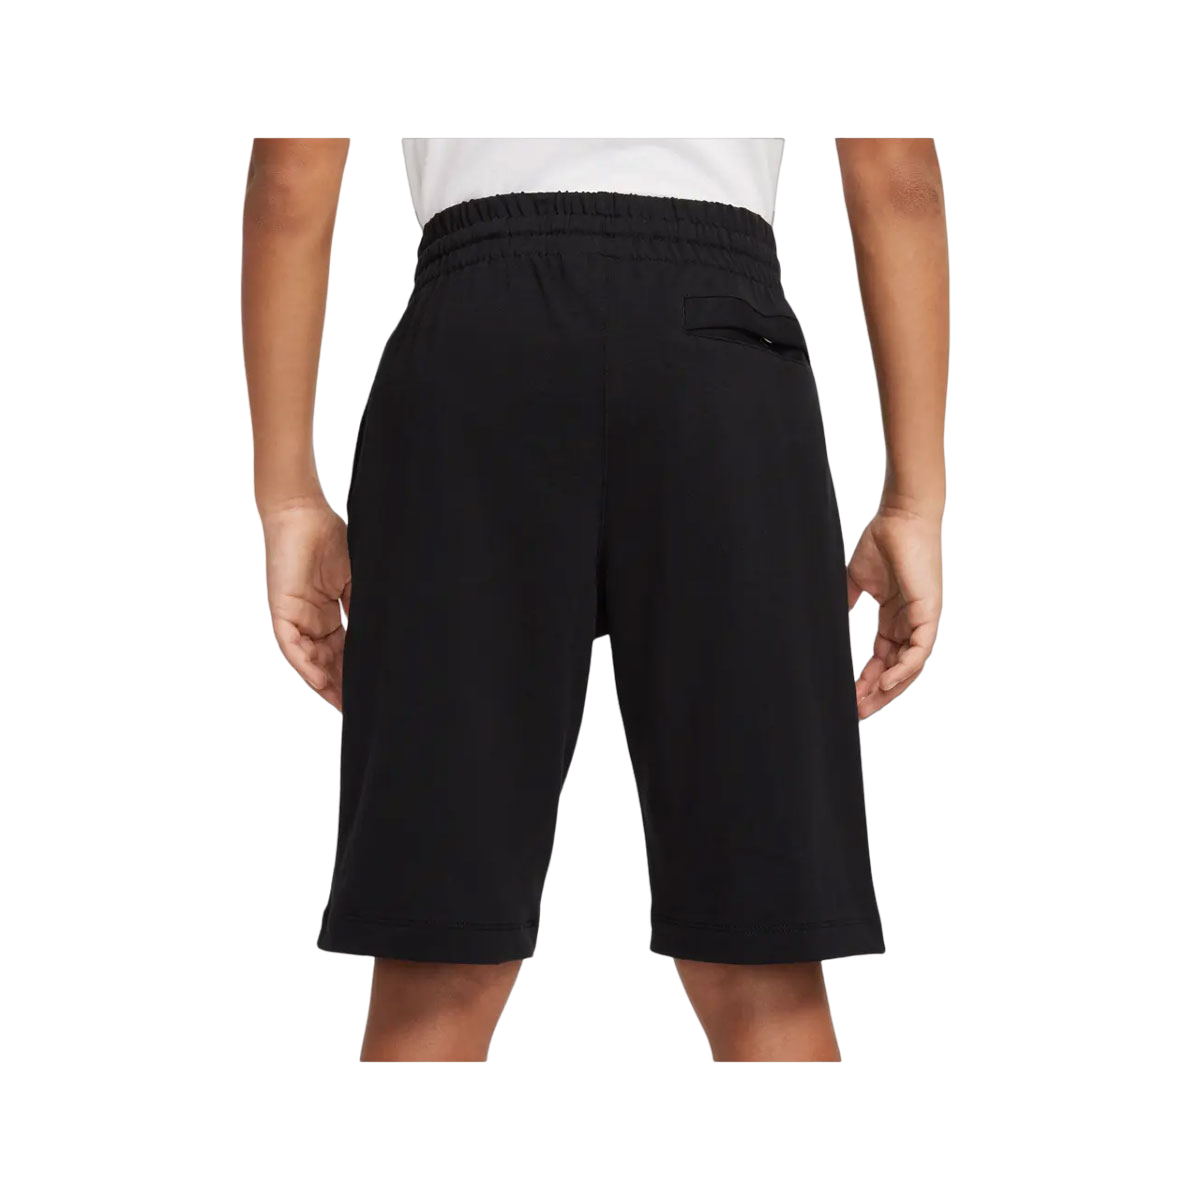 Nike Boy's Cotton Shorts